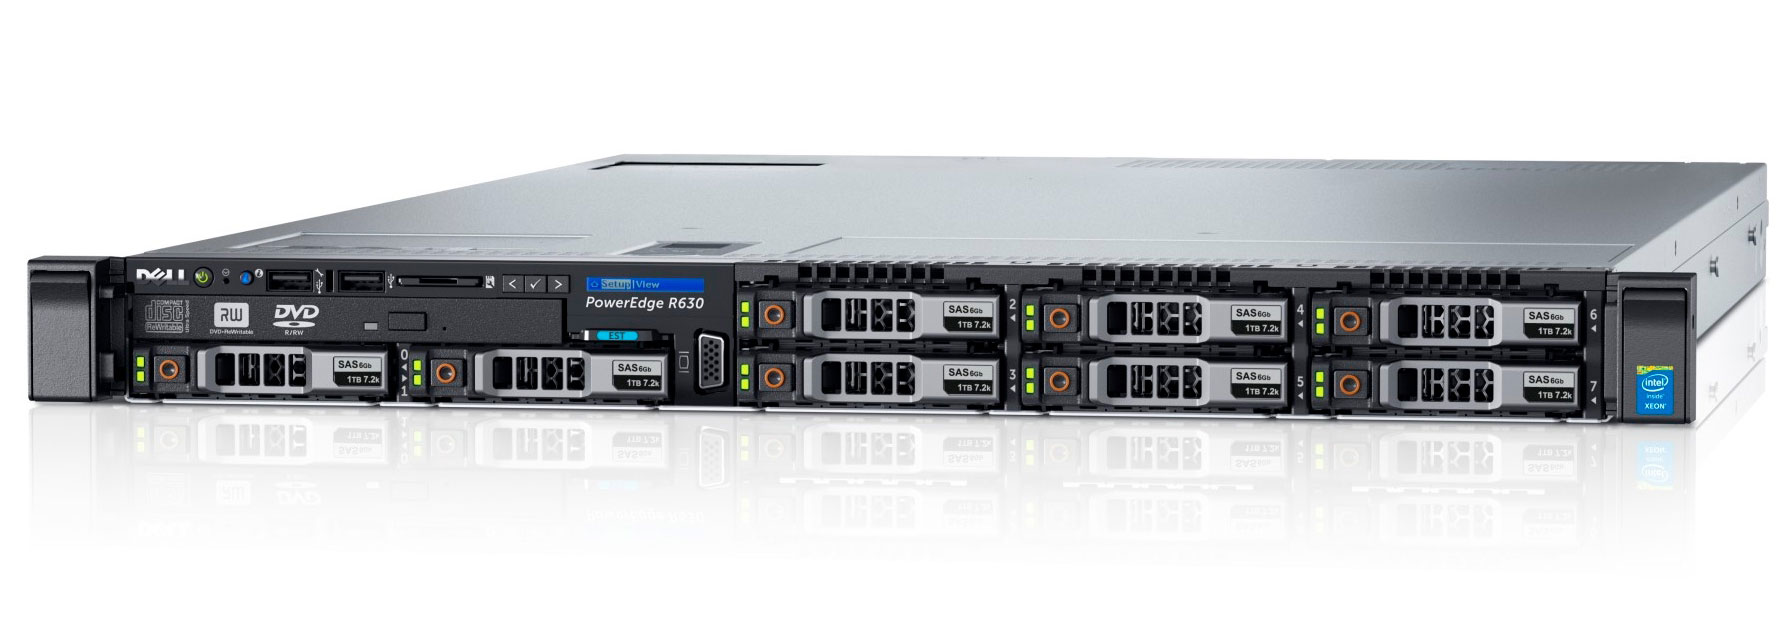 Подробное фото Сервер DELL PowerEdge R630 2*Xeon E5-2660v3 128Gb 2133P DDR4 8x noHDD 2.5" SAS RAID Perc H730, 2*PSU